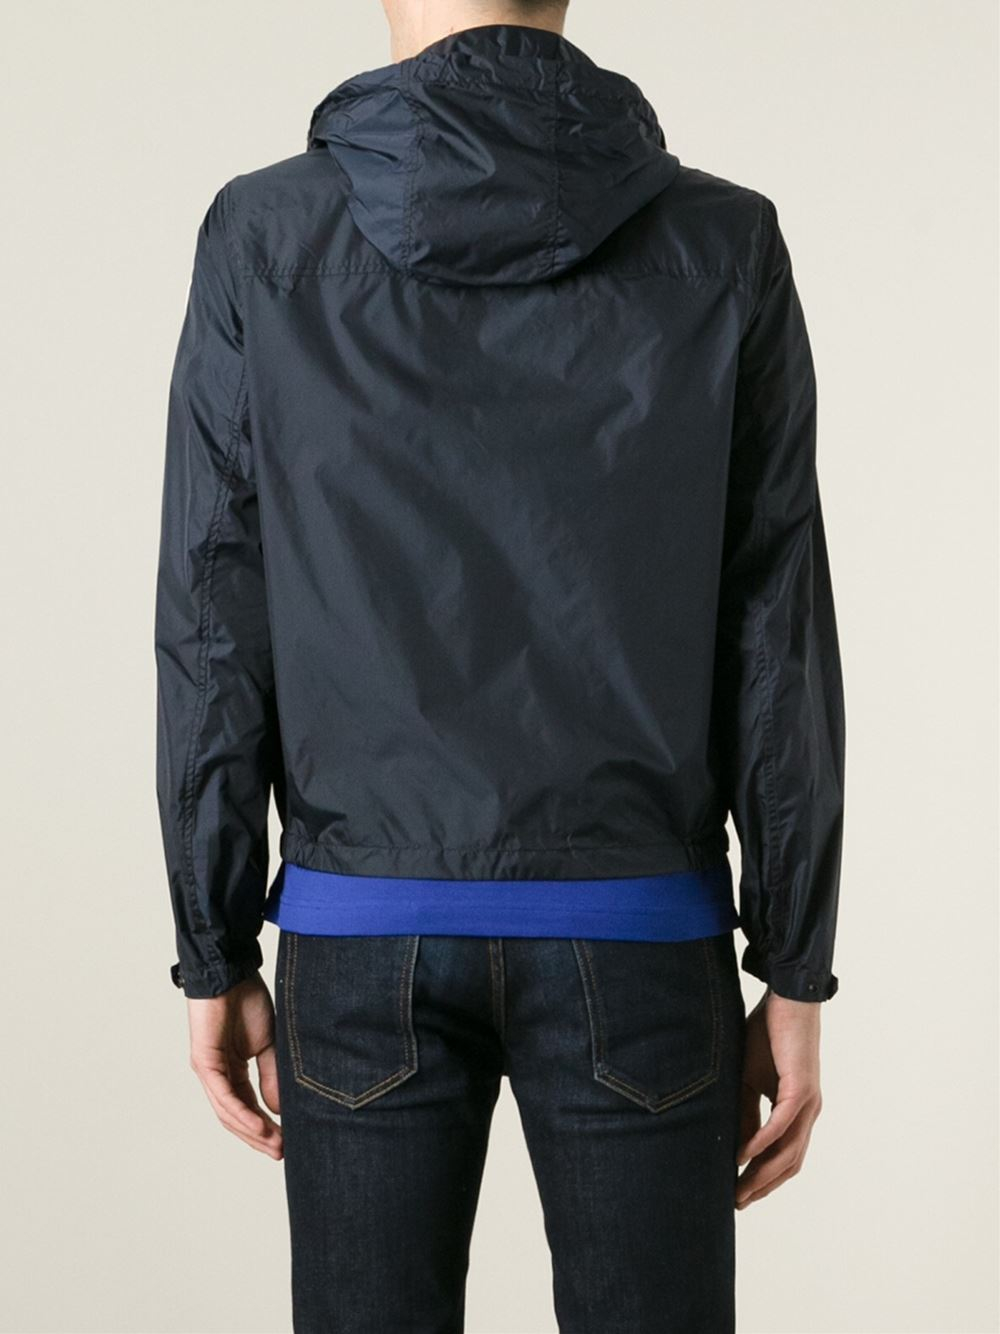 Moncler 'Lyon' Windbreaker Jacket in Blue for Men - Lyst